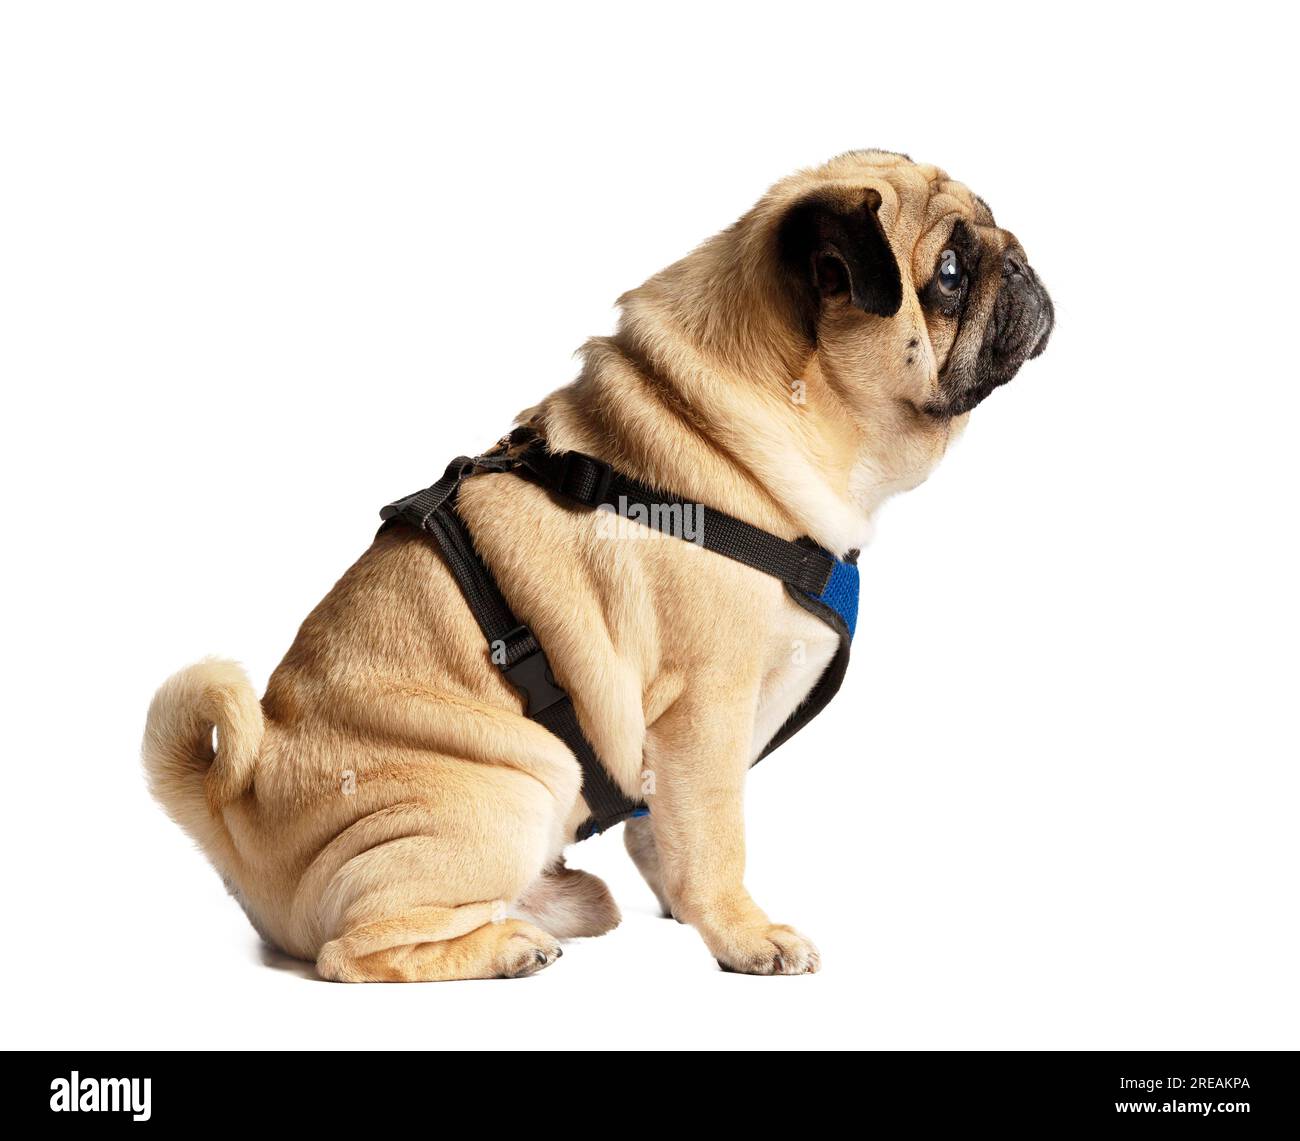 Purebreed mignon chien drôle amical dans un harnais s'assoit et regarde sur le côté avec intérêt, isolé sur un fond blanc, photo de profil. Accessoires Banque D'Images